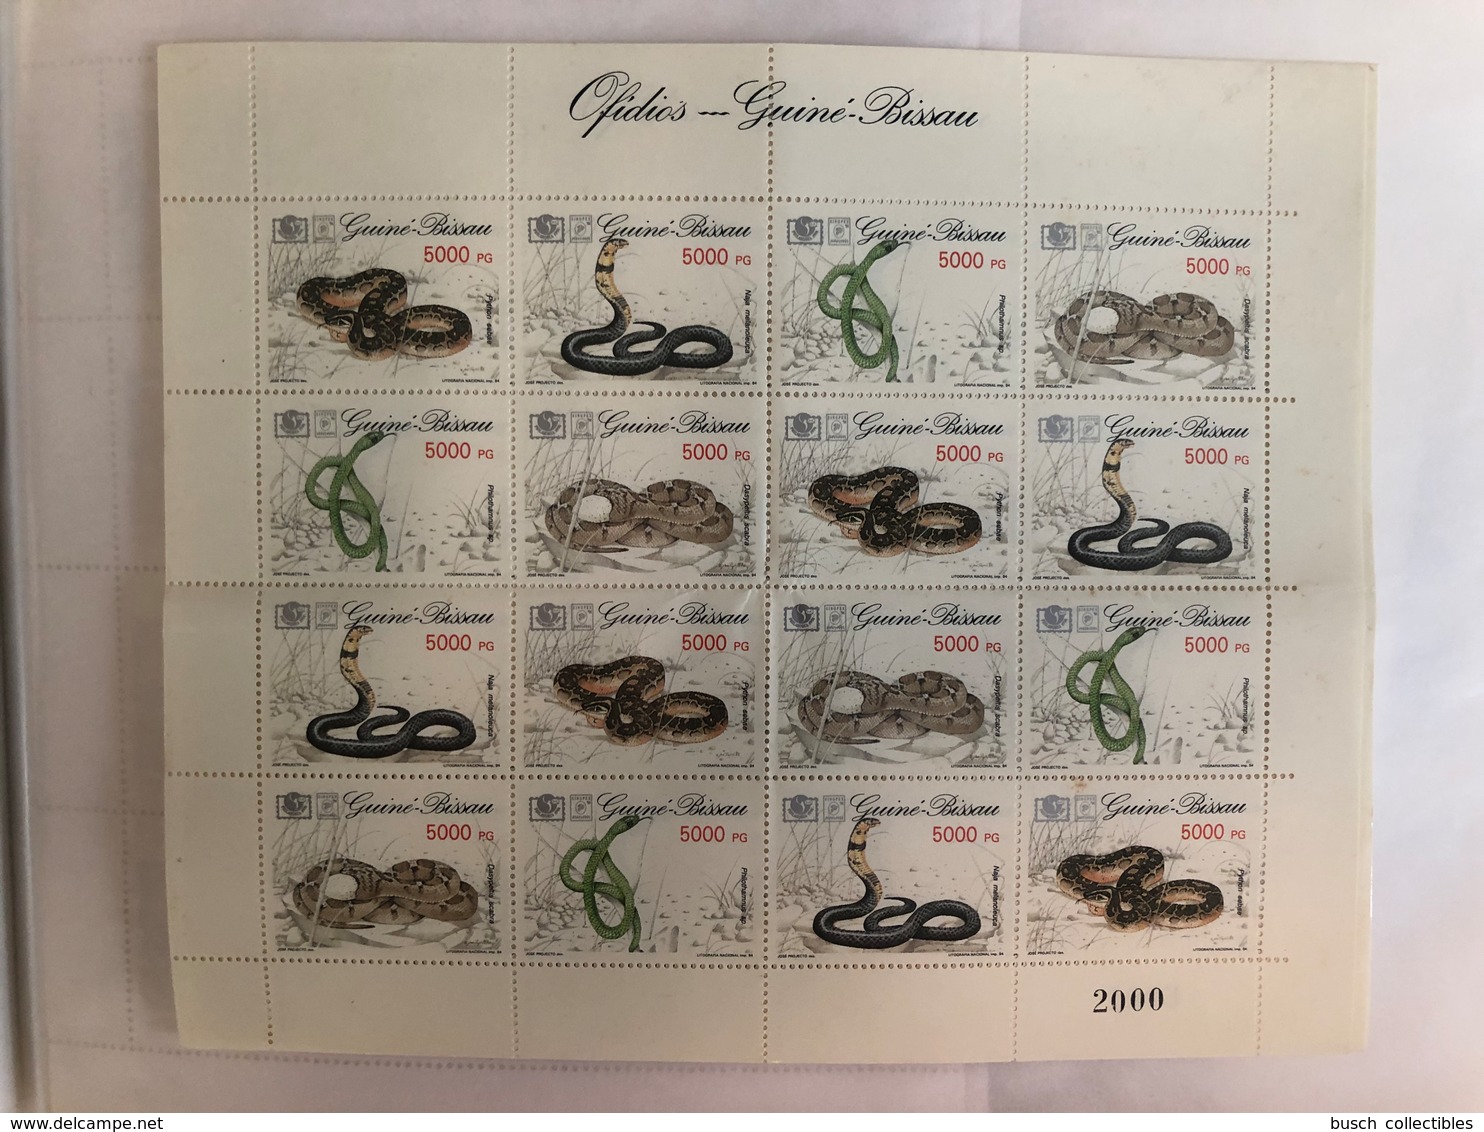 Guiné-Bissau Guinea Guinée 1994 Mi. 1211-1214 Serpents Snakes Schlangen Reptiles Reptilien MNH** - Serpientes